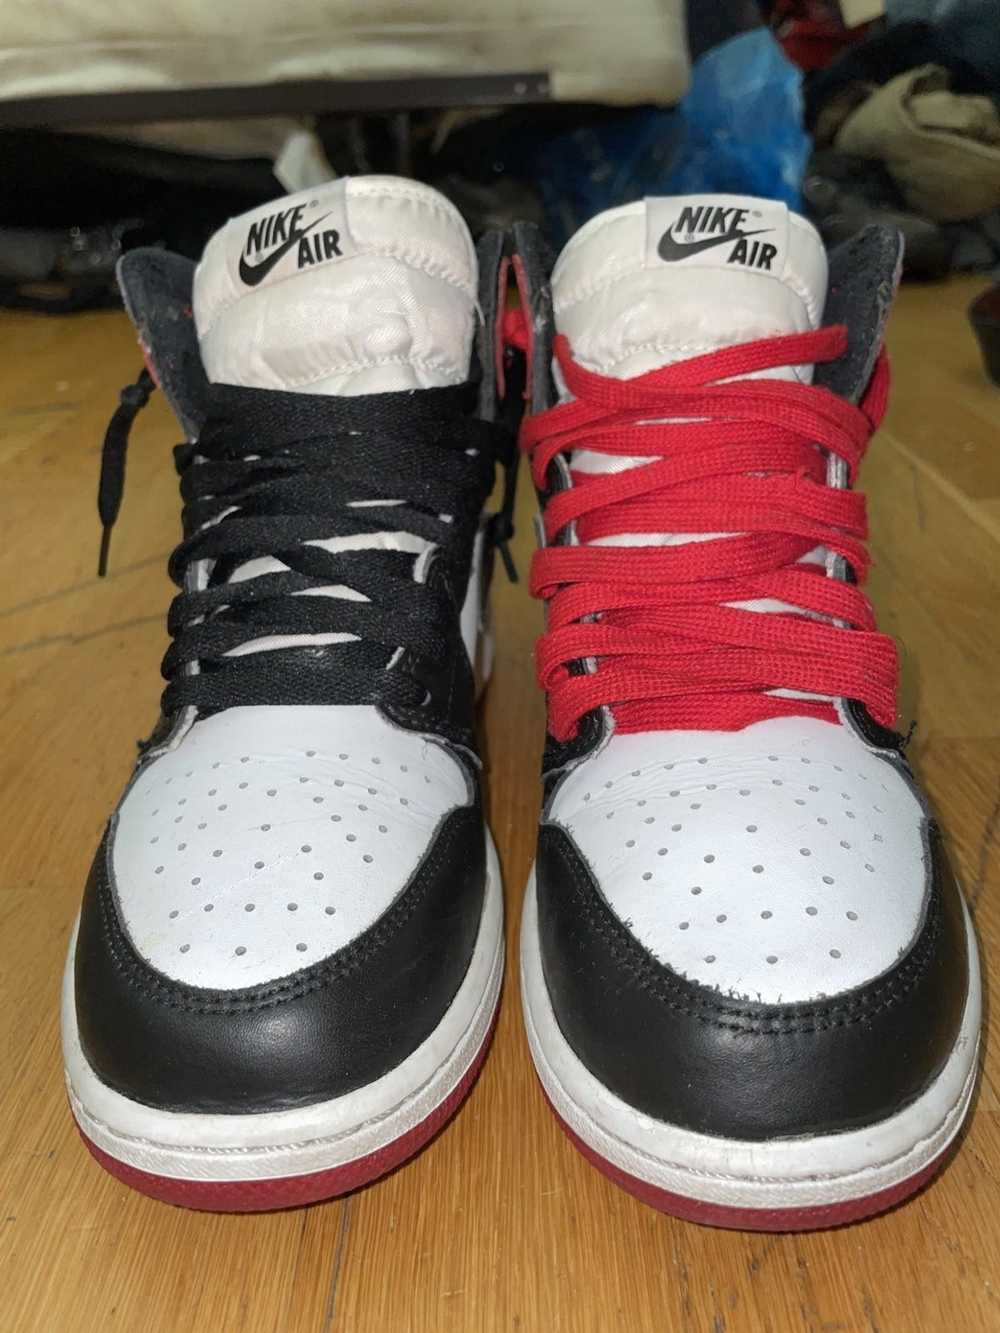 Jordan Brand Jordan 1 Retro Black toes - image 2